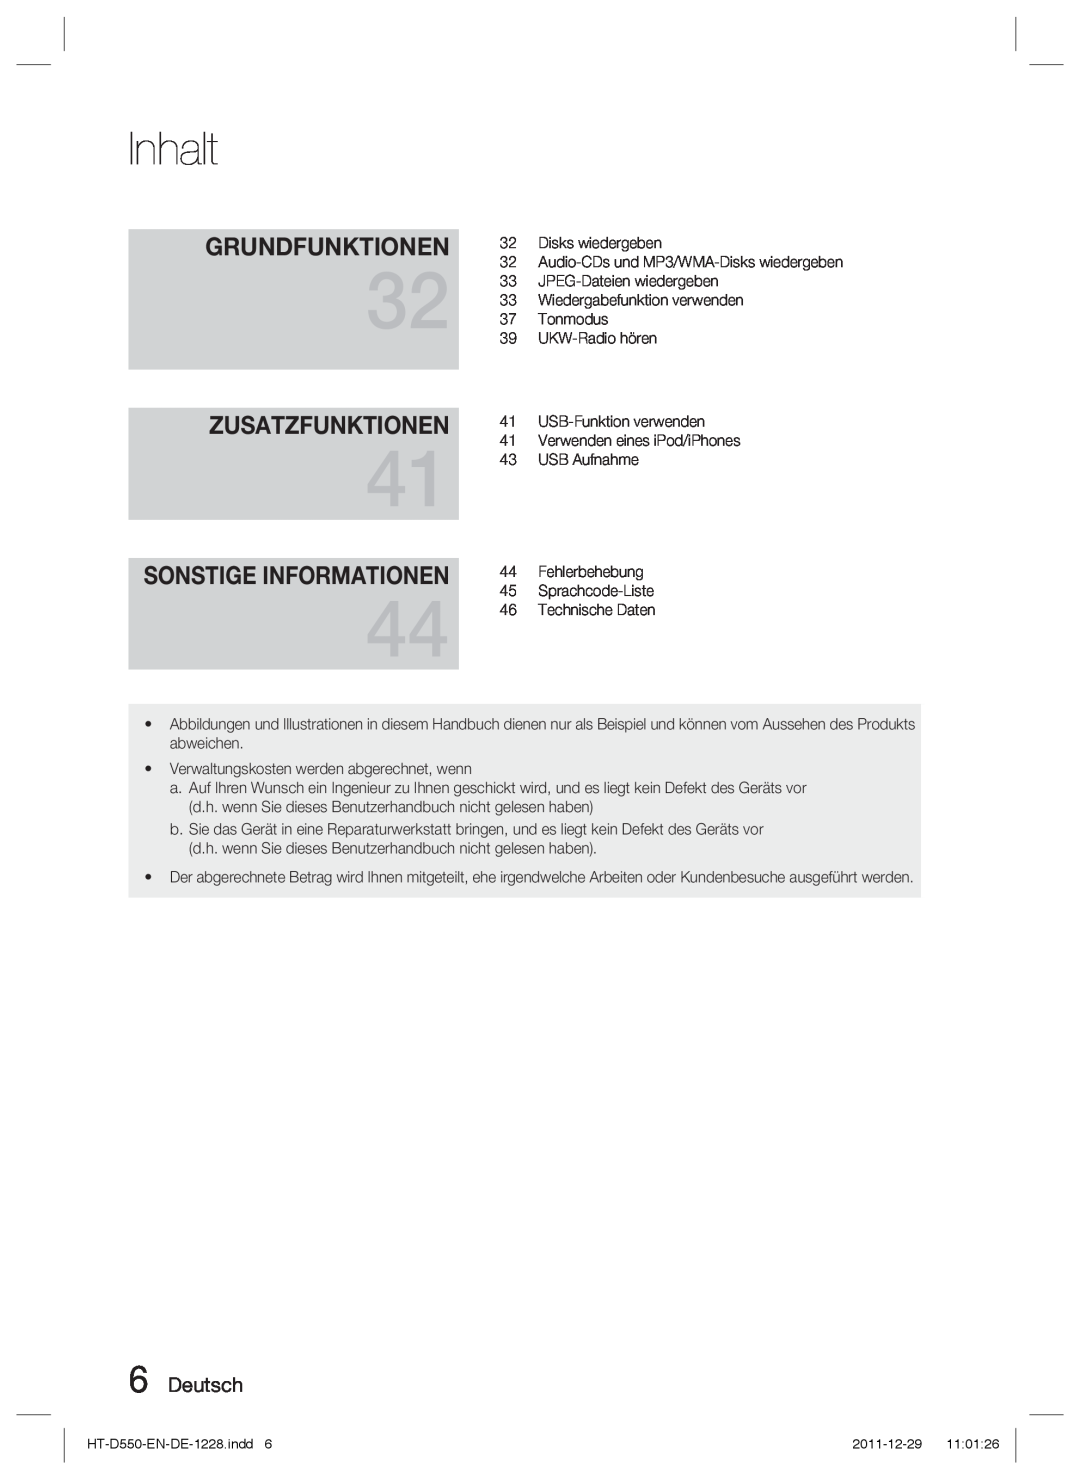 Samsung HT-D555/ZF, HT-D550/XN, HT-D555/TK manual Zusatzfunktionen, Sonstige Informationen, Grundfunktionen, Deutsch, Inhalt 